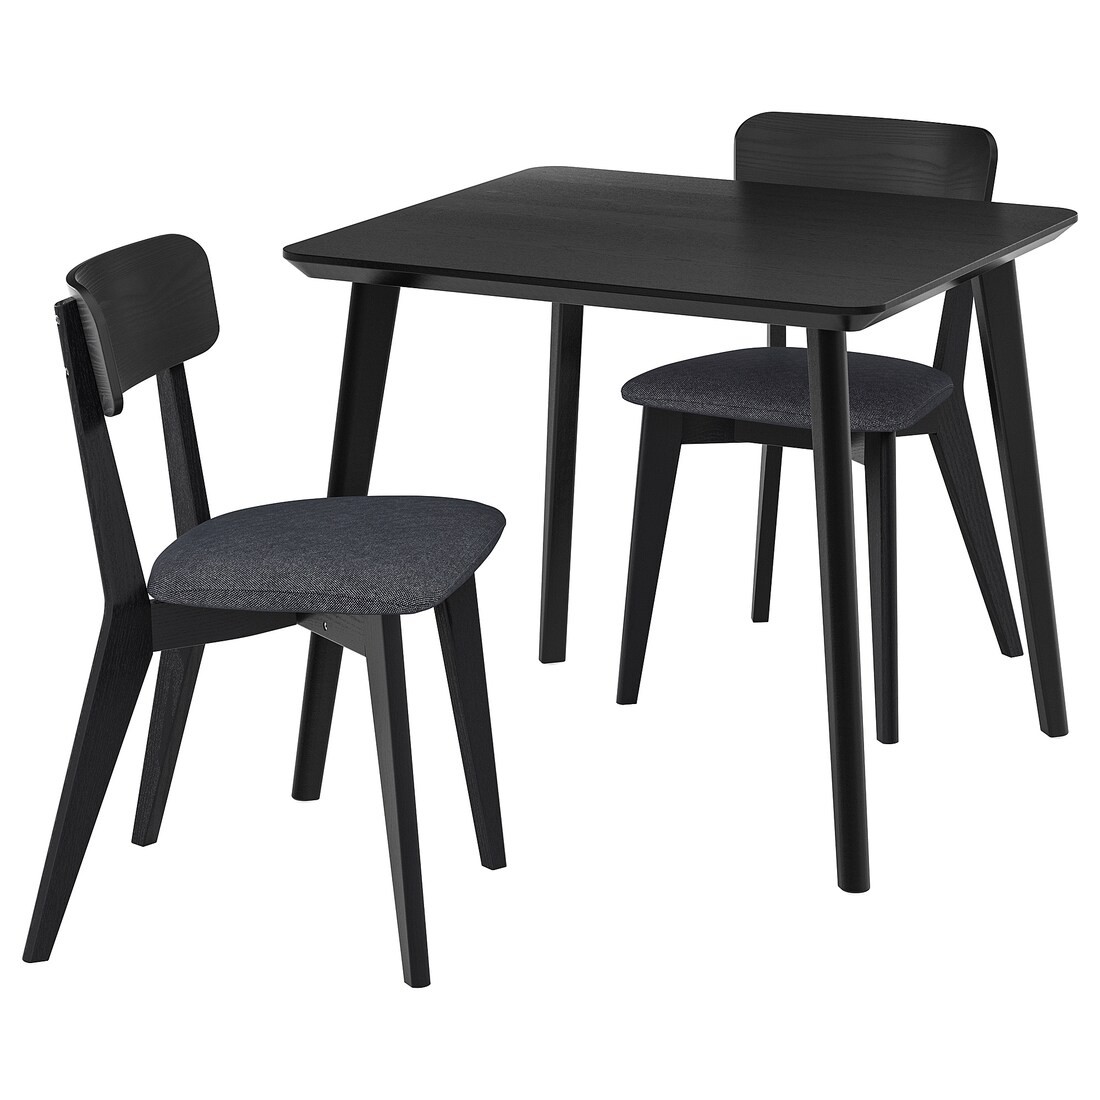 IKEA LISABO / LISABO Стол и 2 стула, черный / тальмира черный / серый, 88x78 см 89554921 | 895.549.21